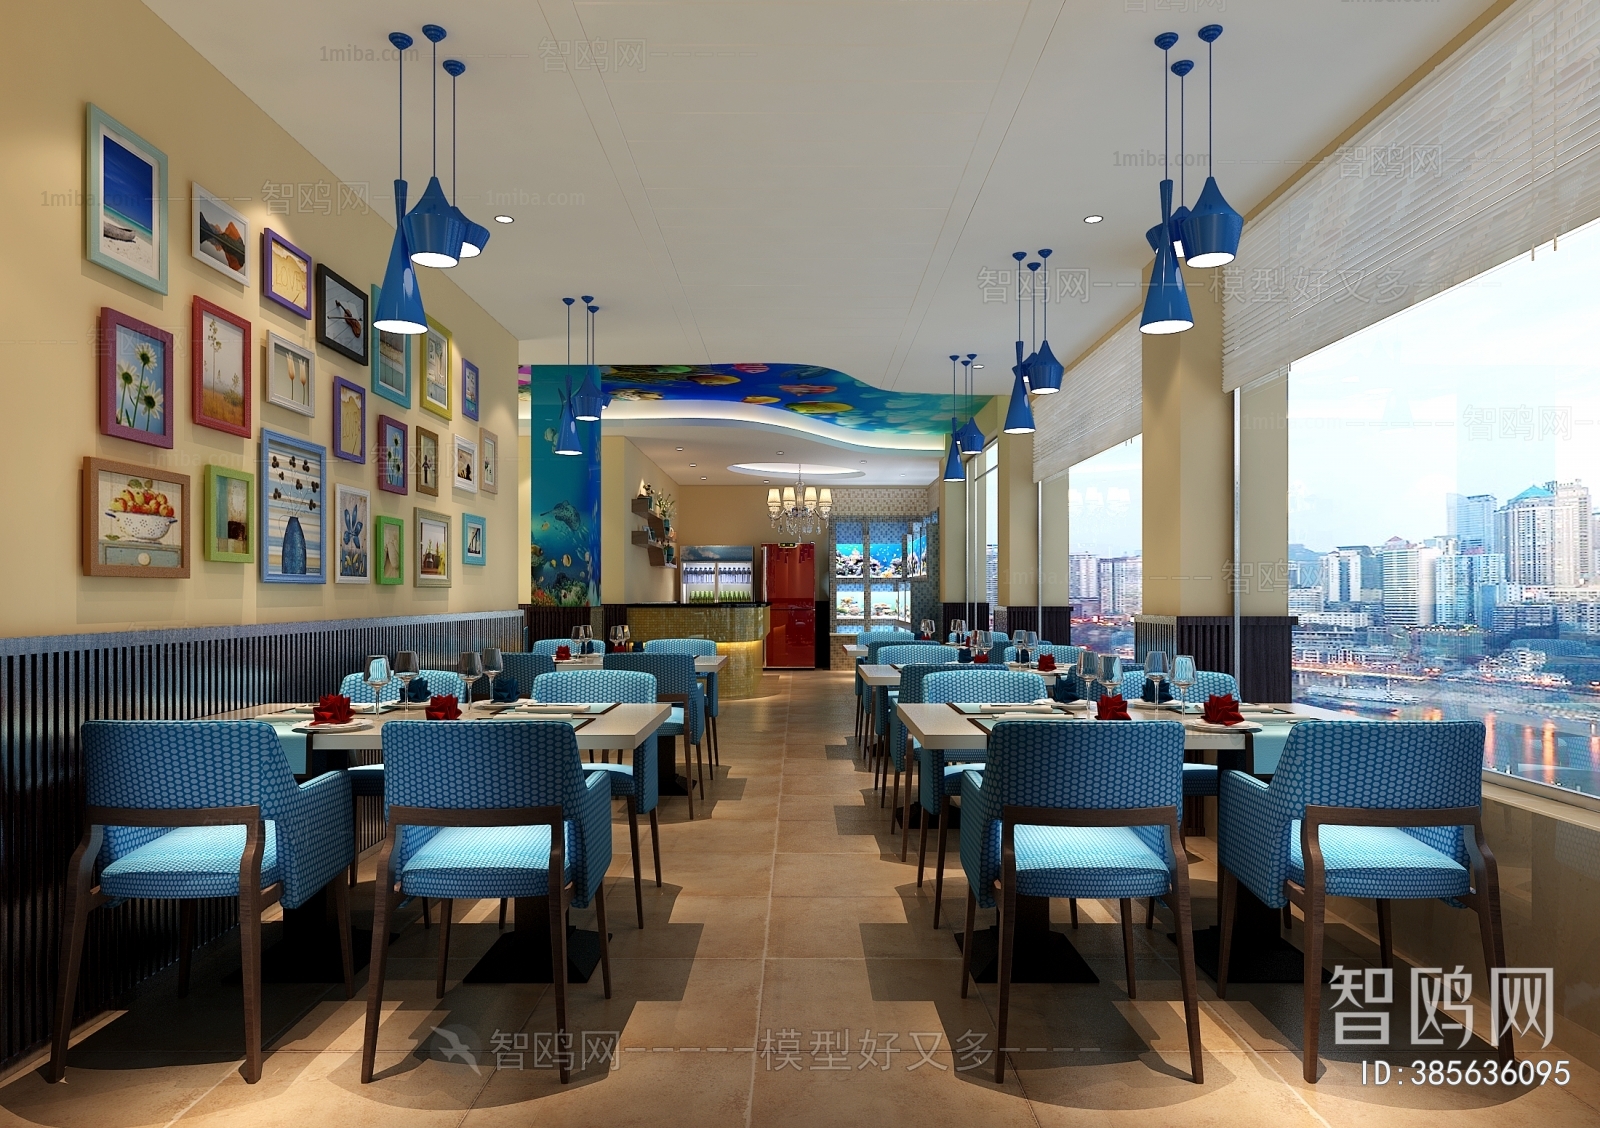 Mediterranean Style Restaurant